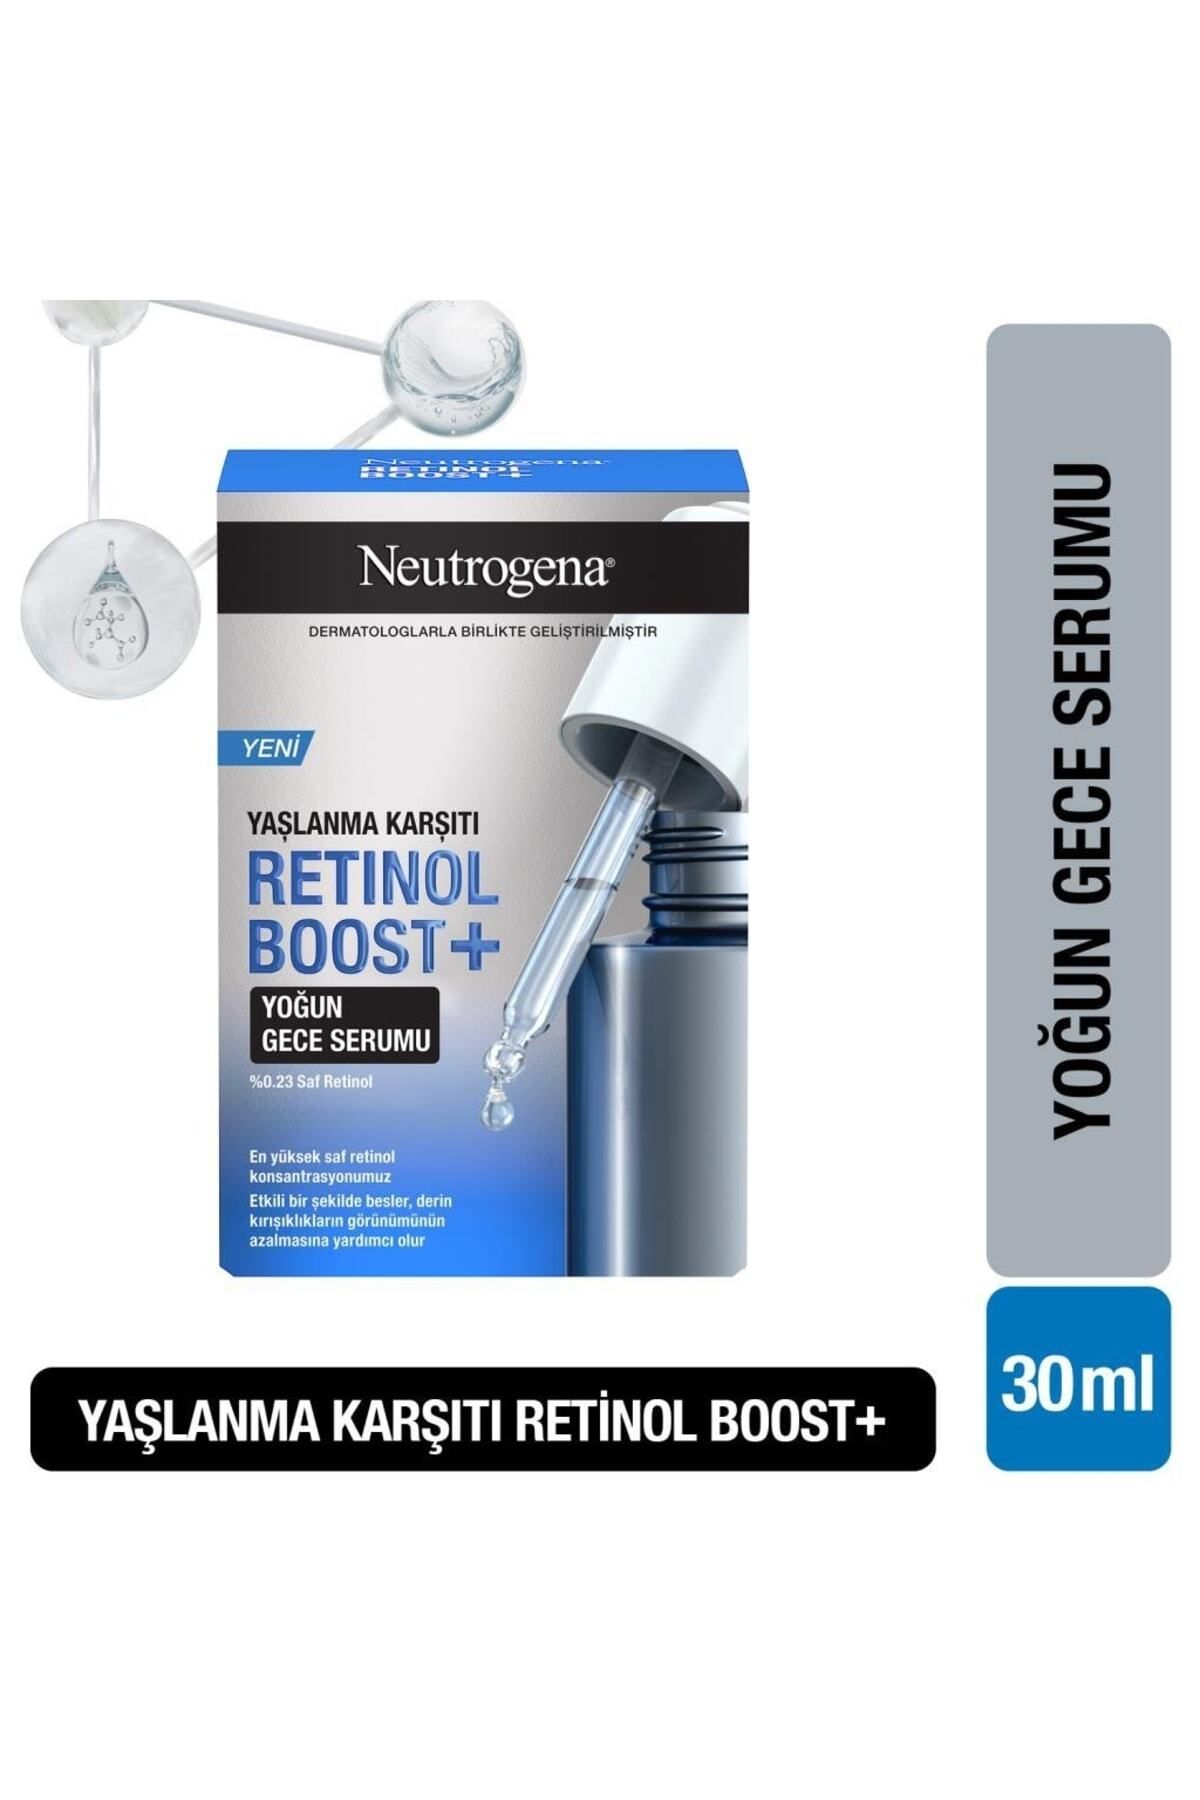 Neutrogena Retinol Boost Kırışıklık Karşıtı Yoğun Gece Serumu Antiaging